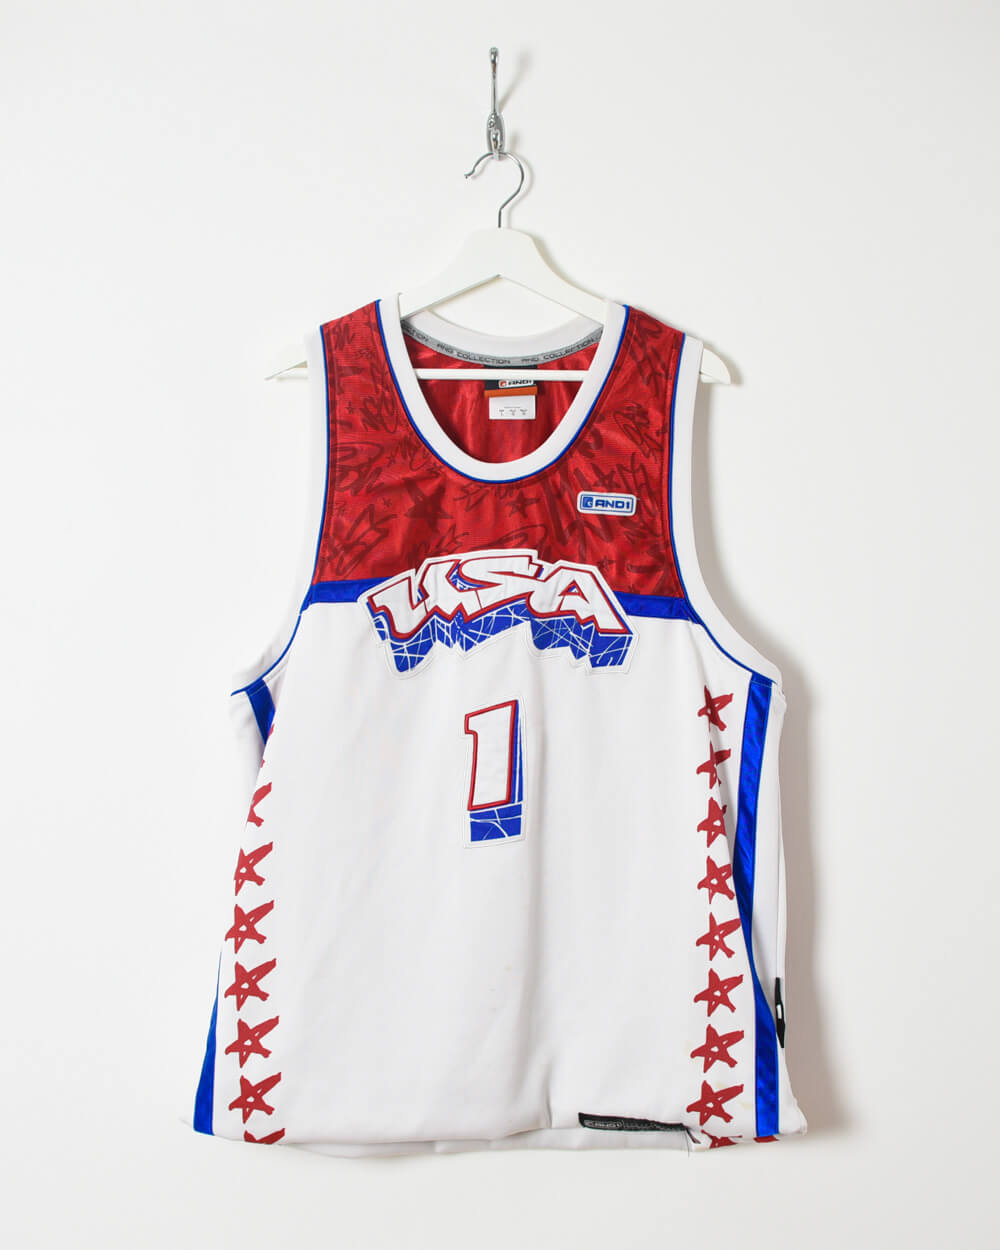 Vintage 90s Basketball Vest - Large - Domno Vintage